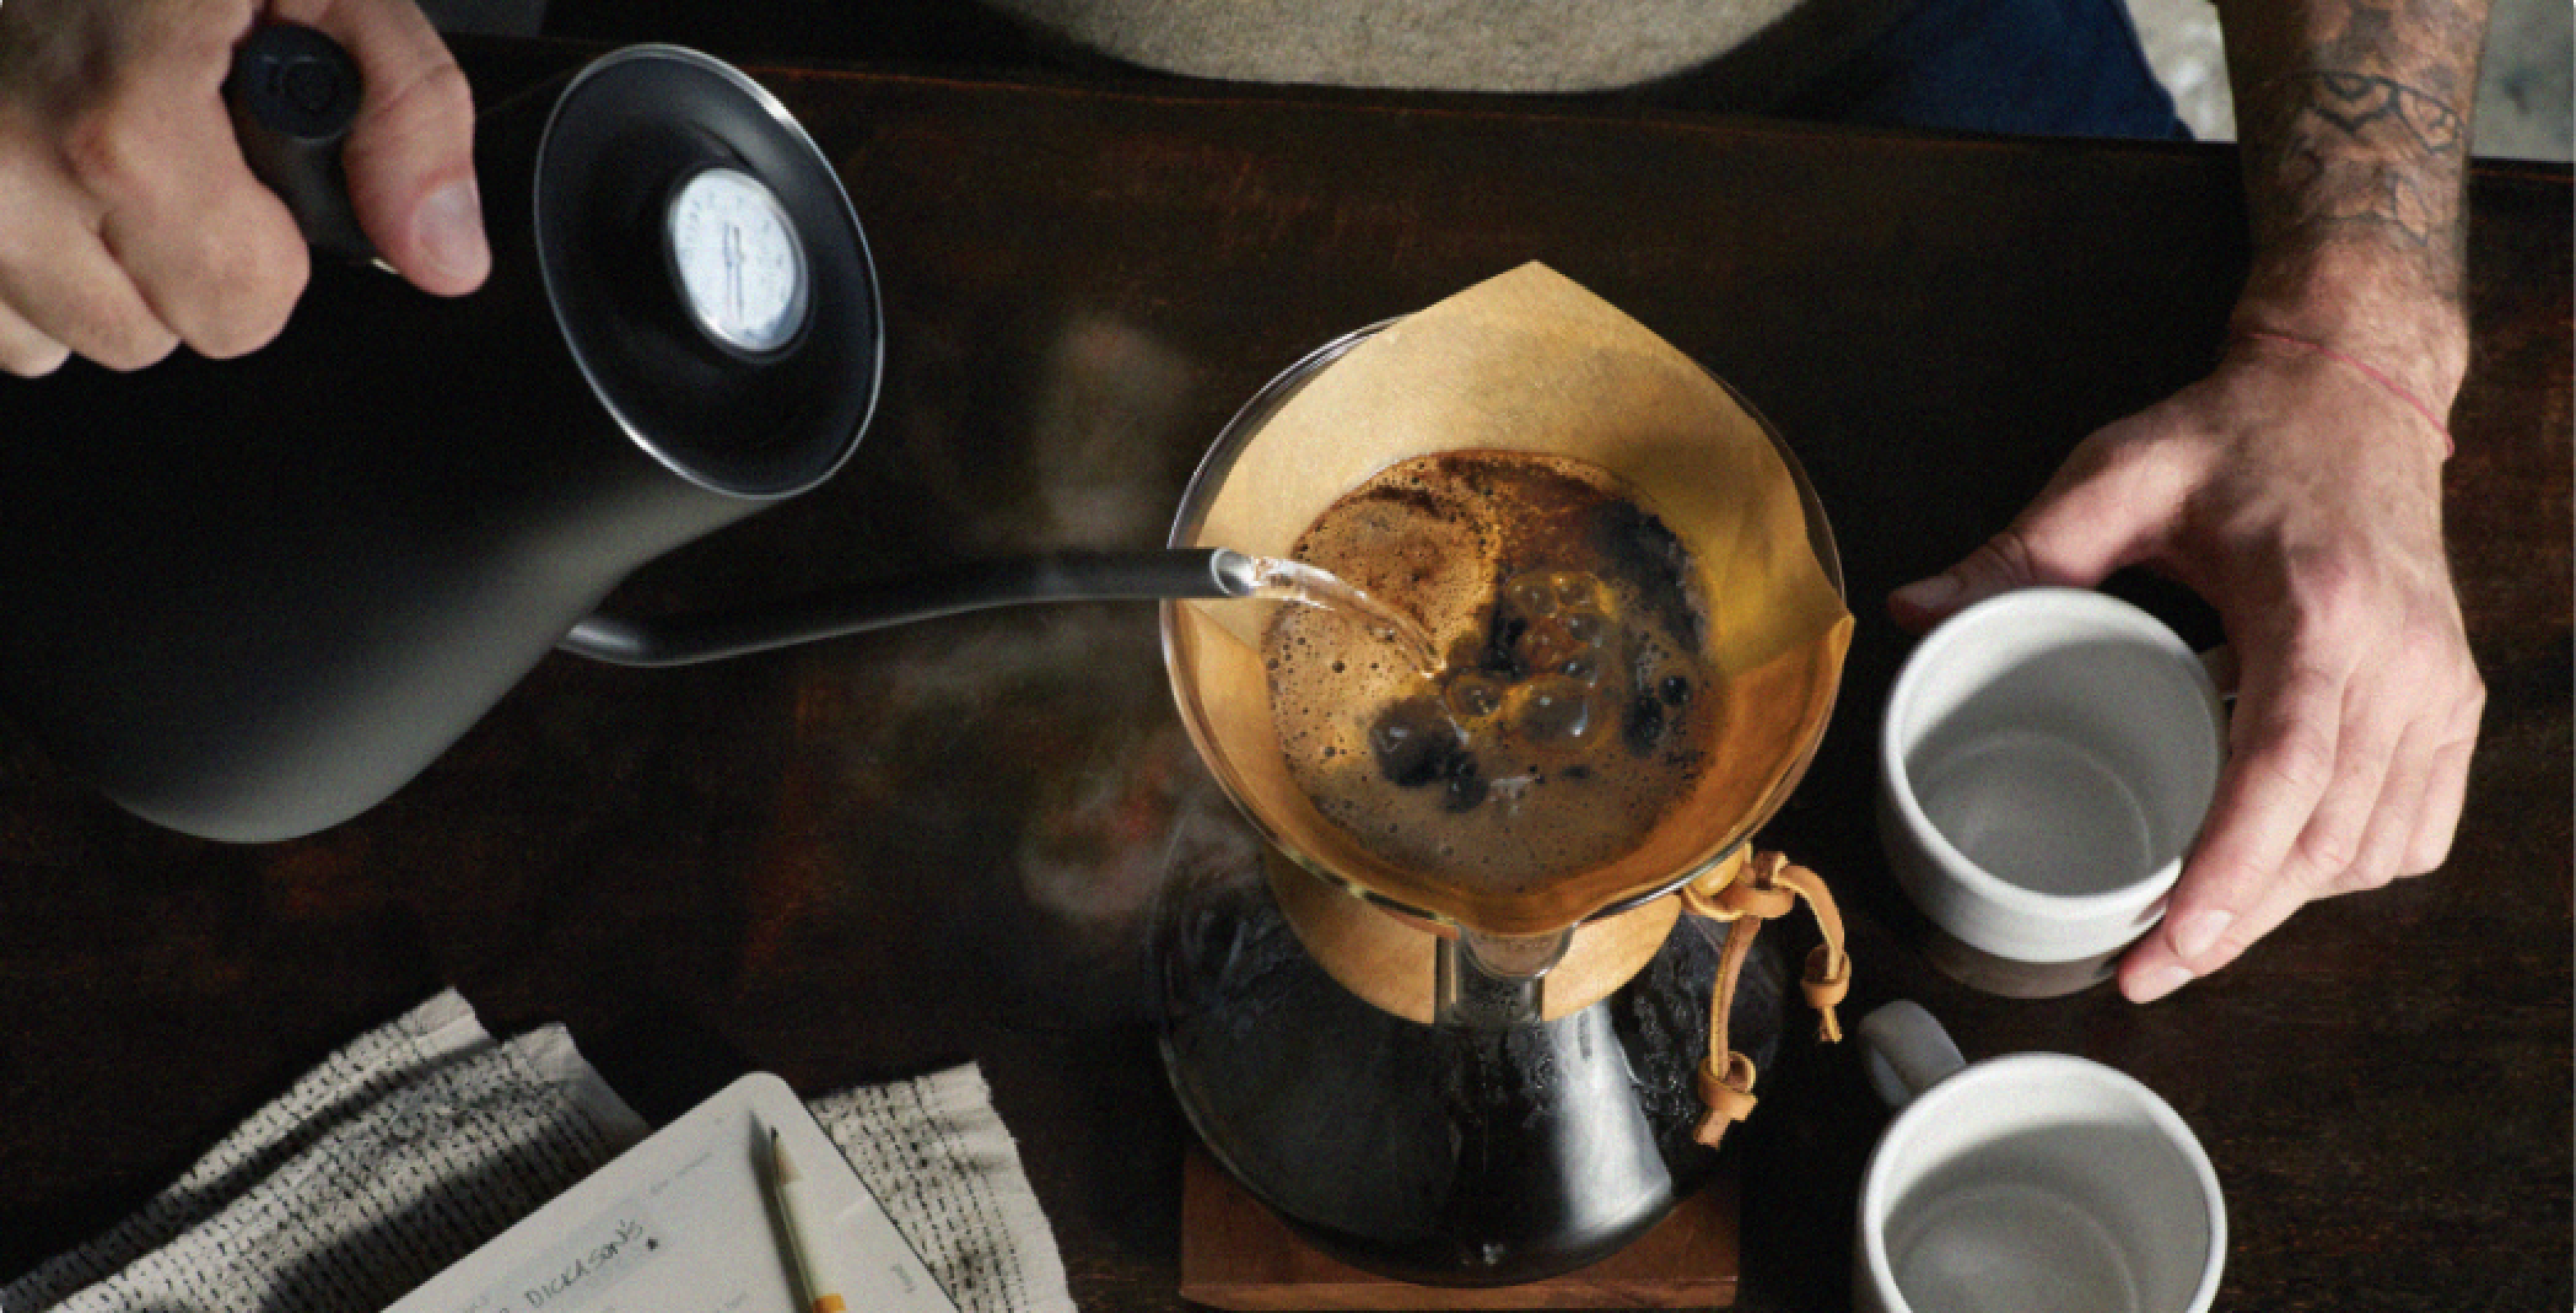 Image Comment Peet's Coffee met en avant virtuellement ses gammes de produits W/Sinfin™